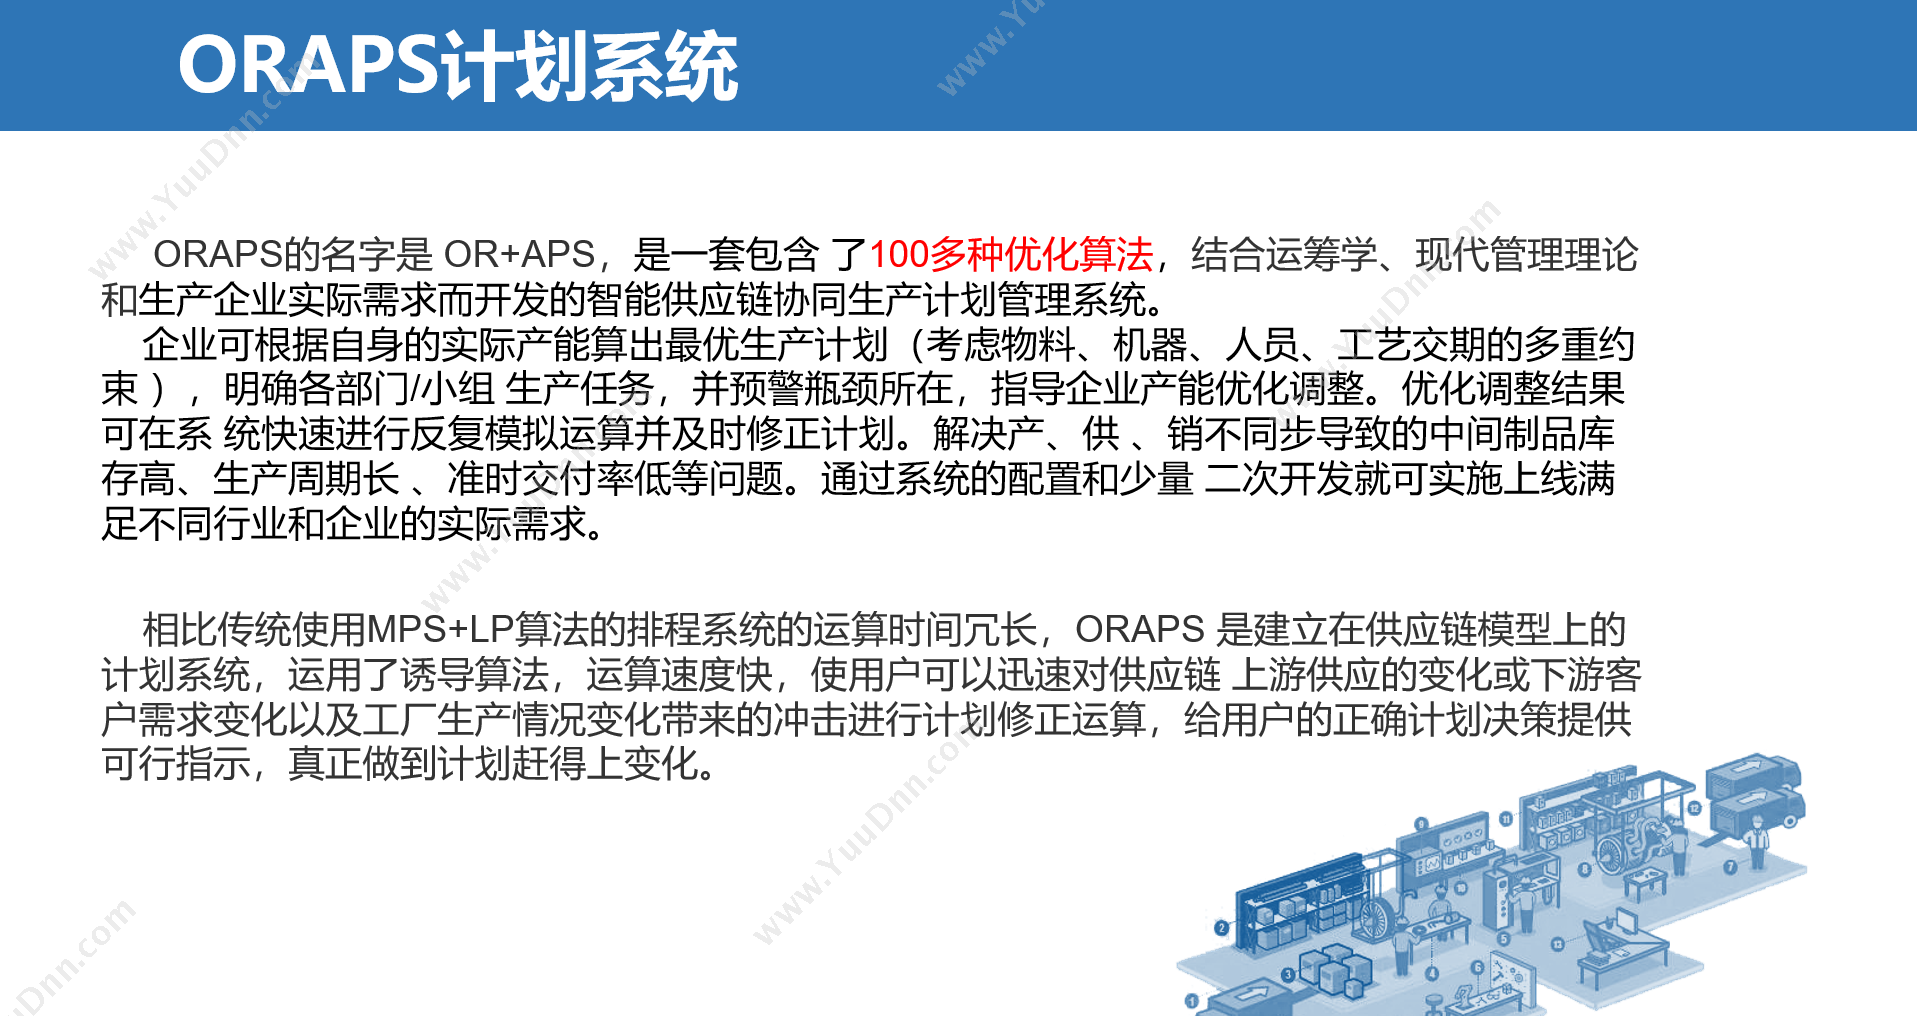 上海不工软件有限公司 不工ORAPS高级生产计划与排程系统 排程与调度